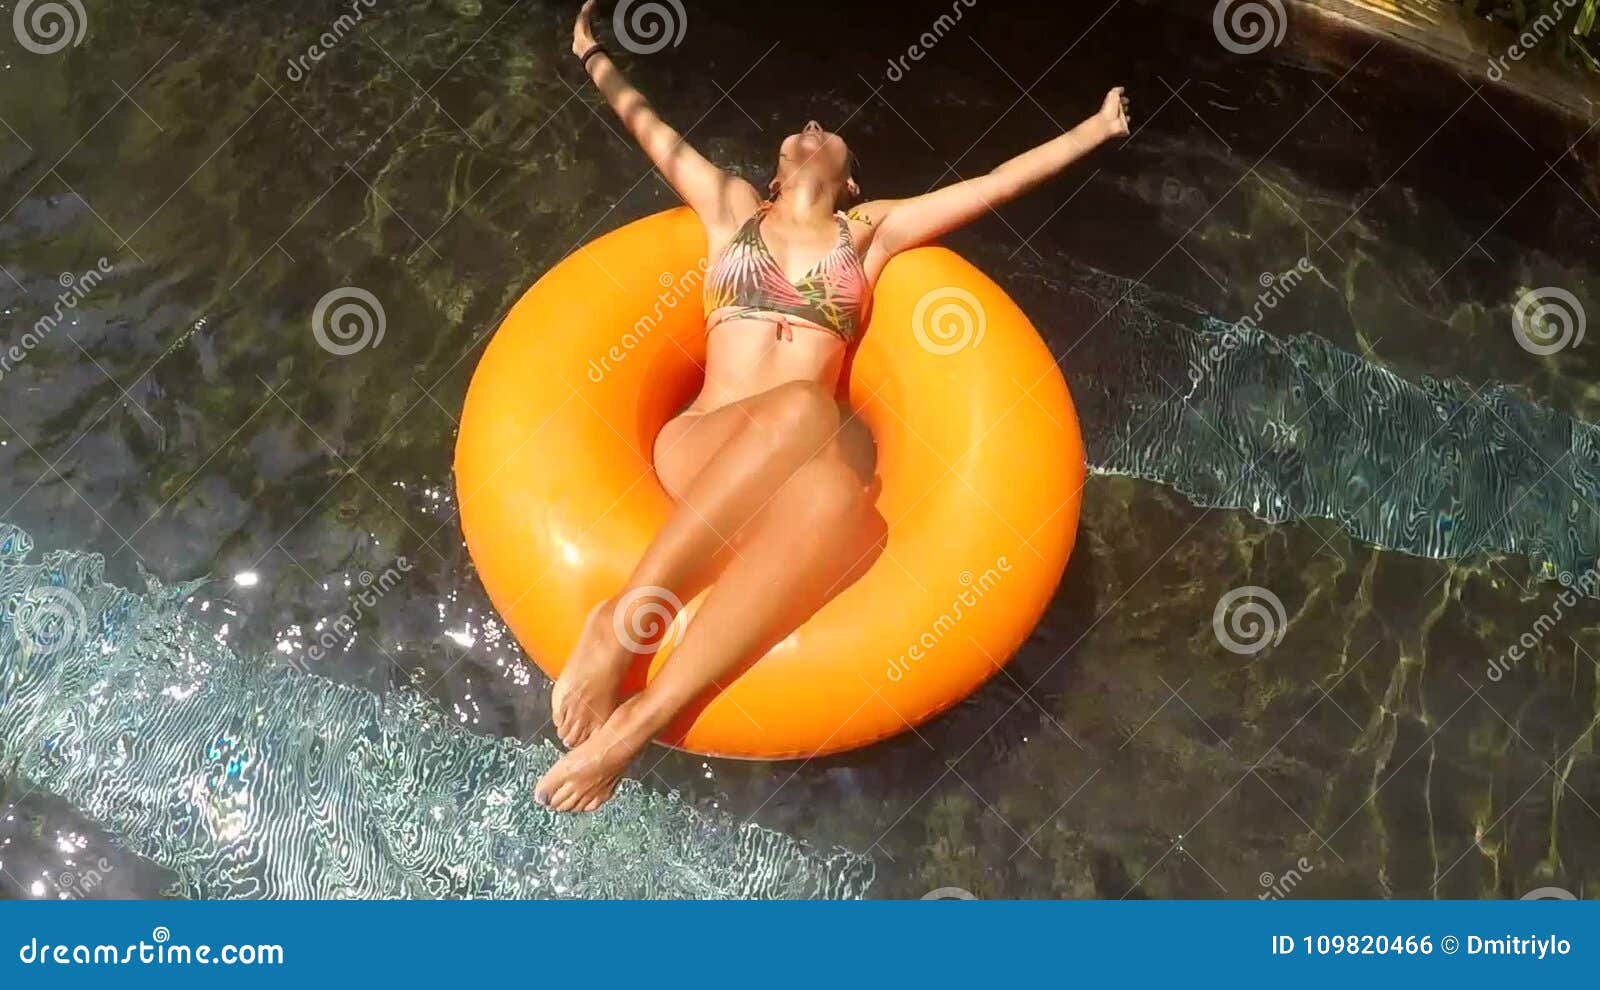 Young Mixed Race Woman in Bikini Relaxing on Tube in Swimming Pool ...